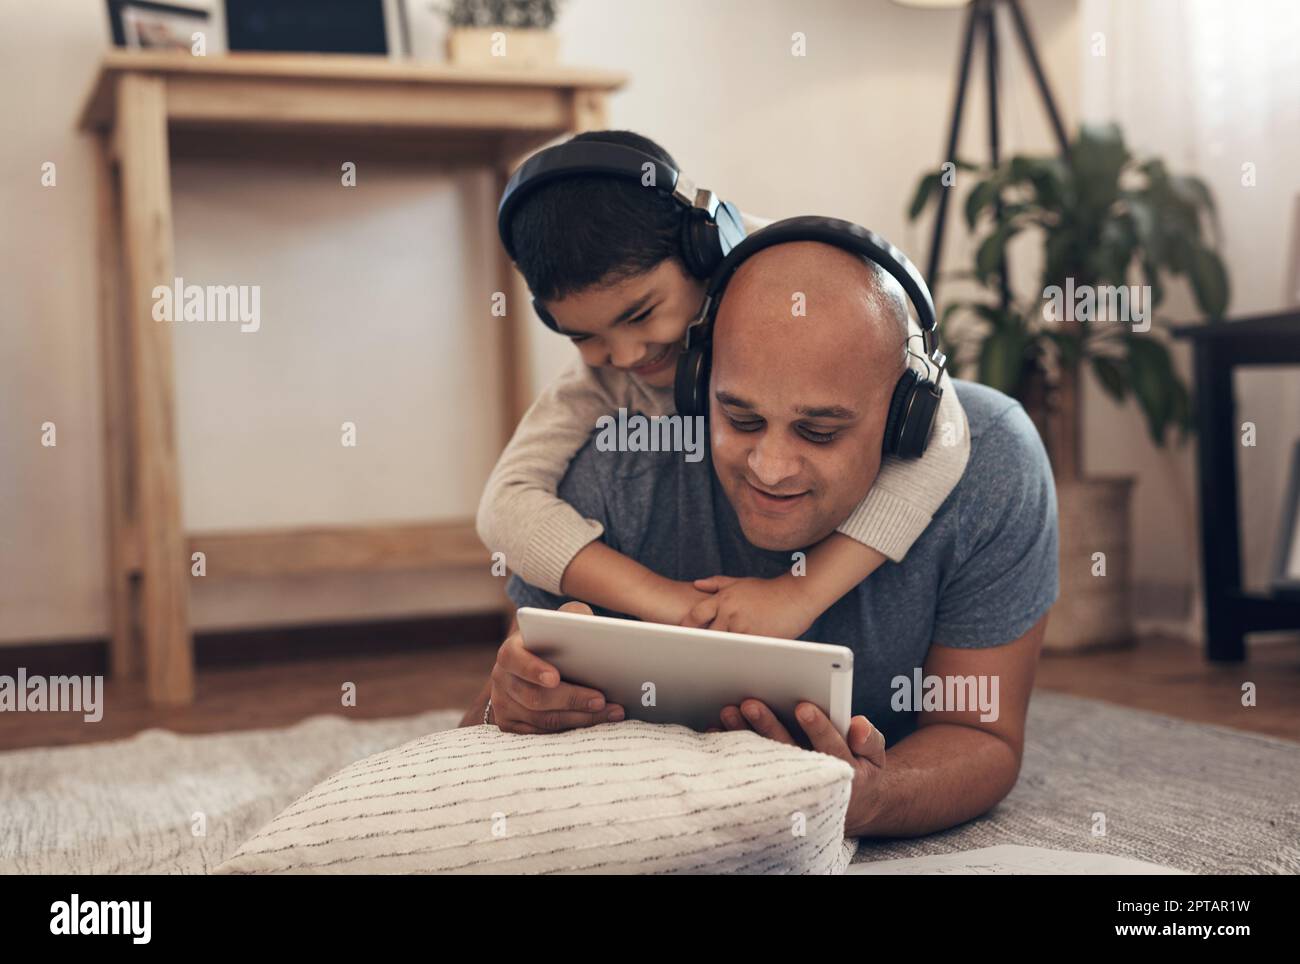 Le famiglie che imparano insieme crescono insieme. un adorabile ragazzino che usa un tablet digitale e le cuffie con il padre a casa Foto Stock